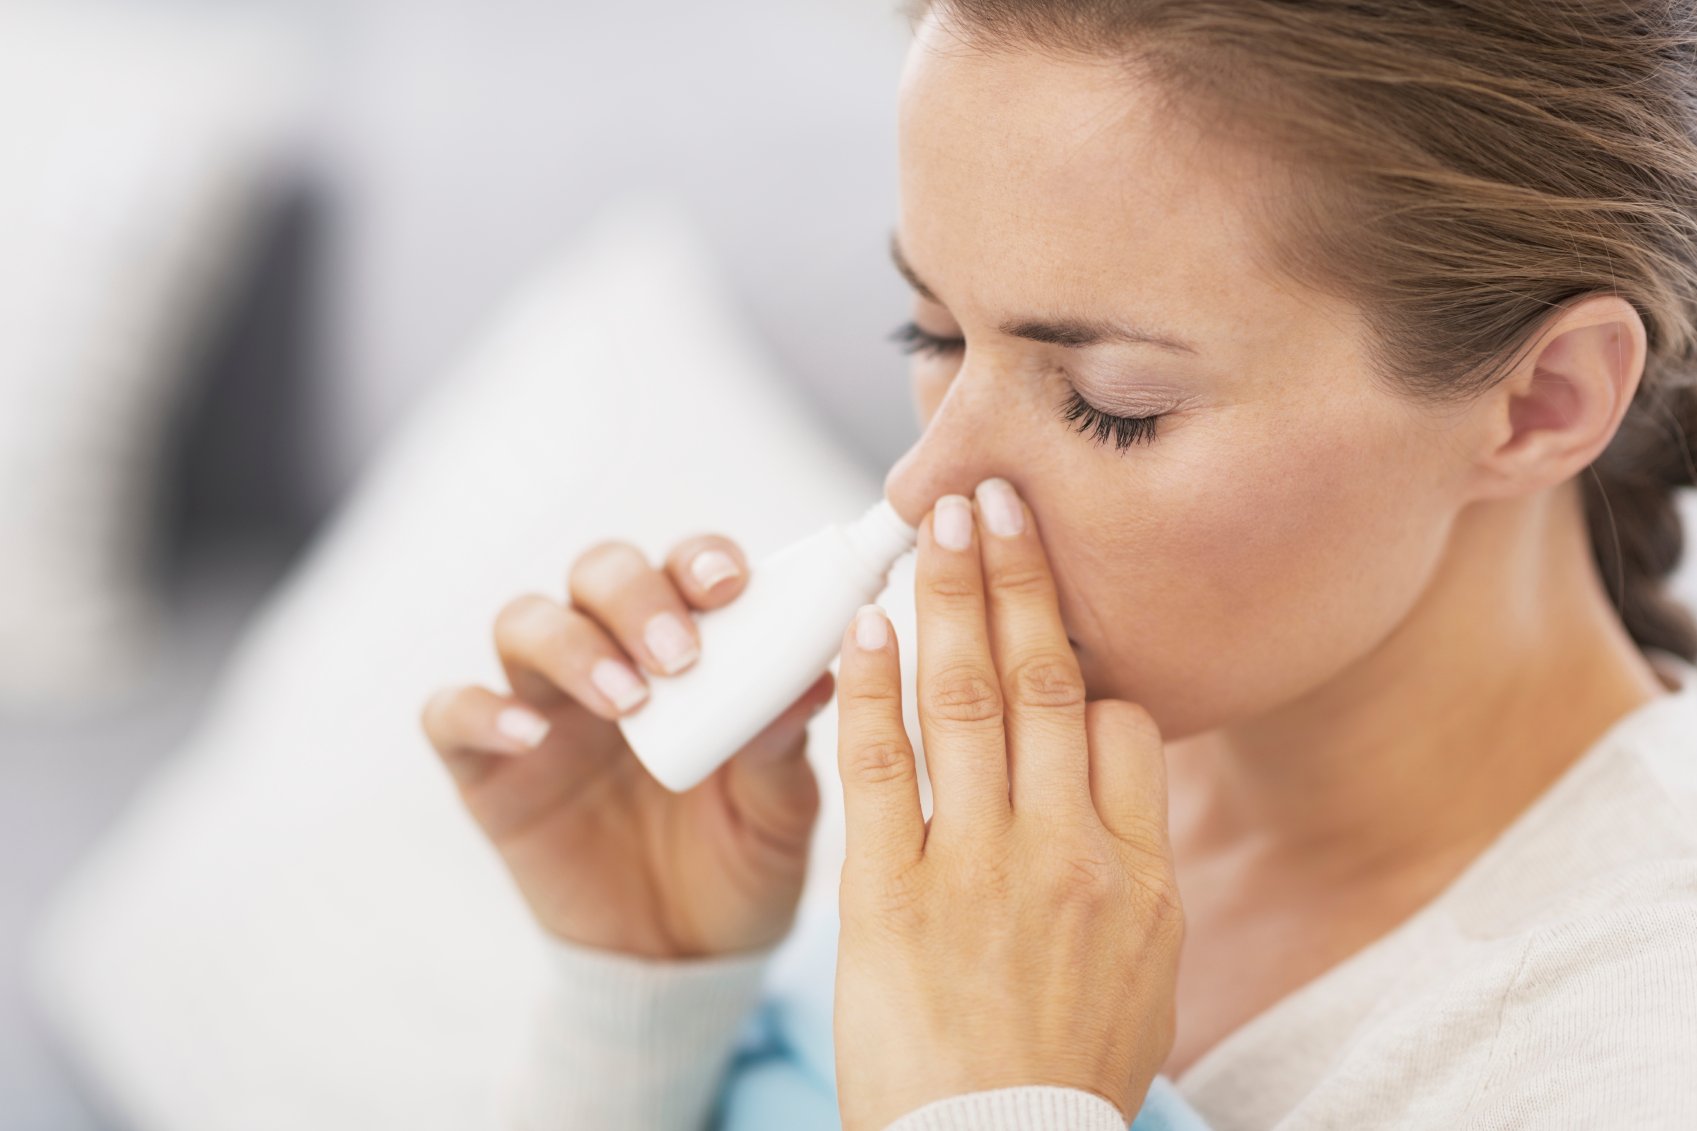 Raffreddore e rinite: guida all'uso degli spray nasali - Starbene